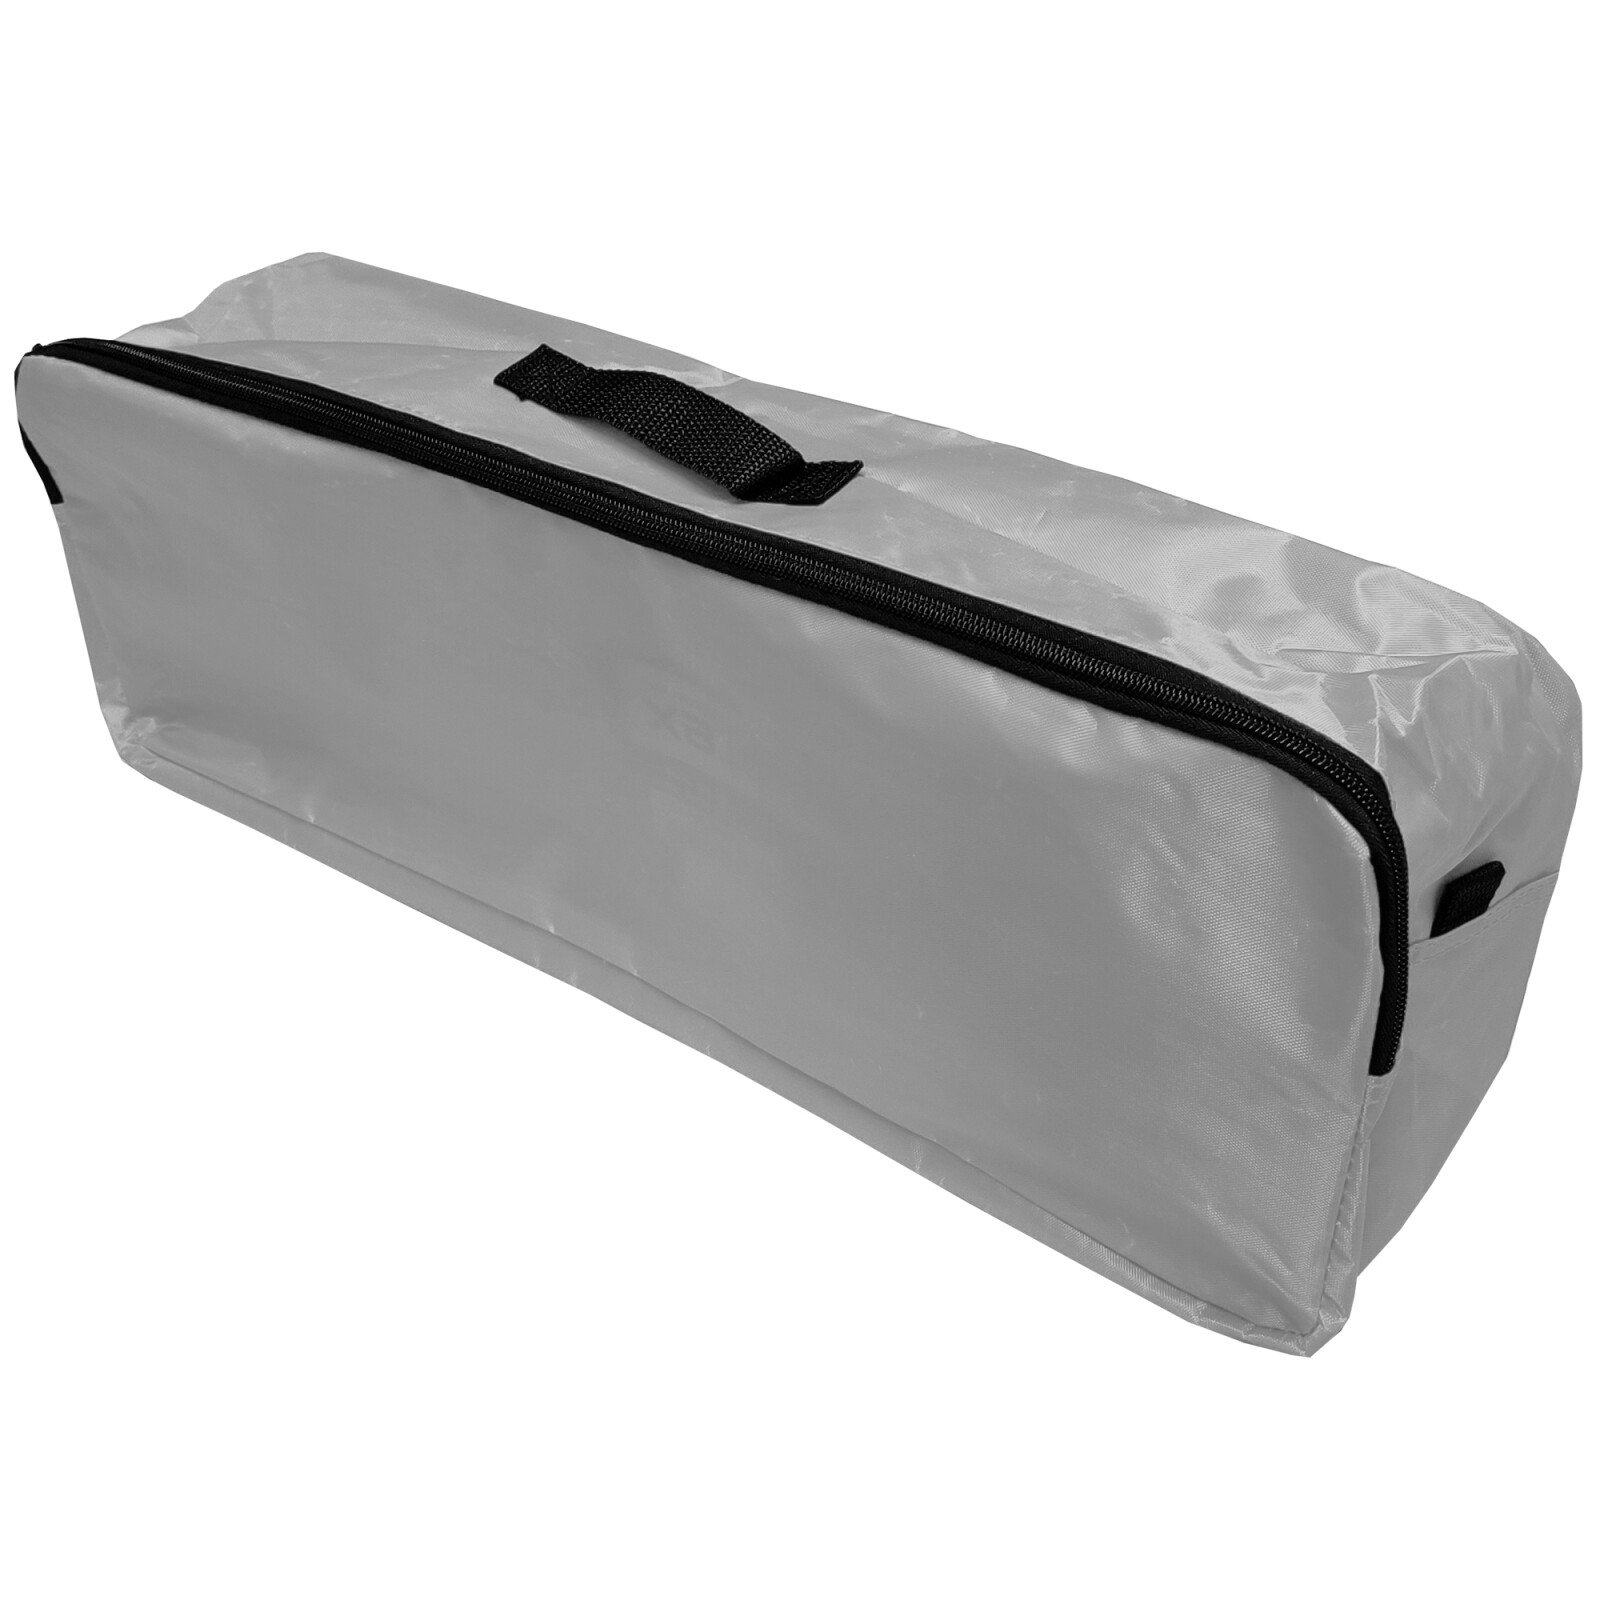 Cridem trunk organizer bag - Grey/Black thumb